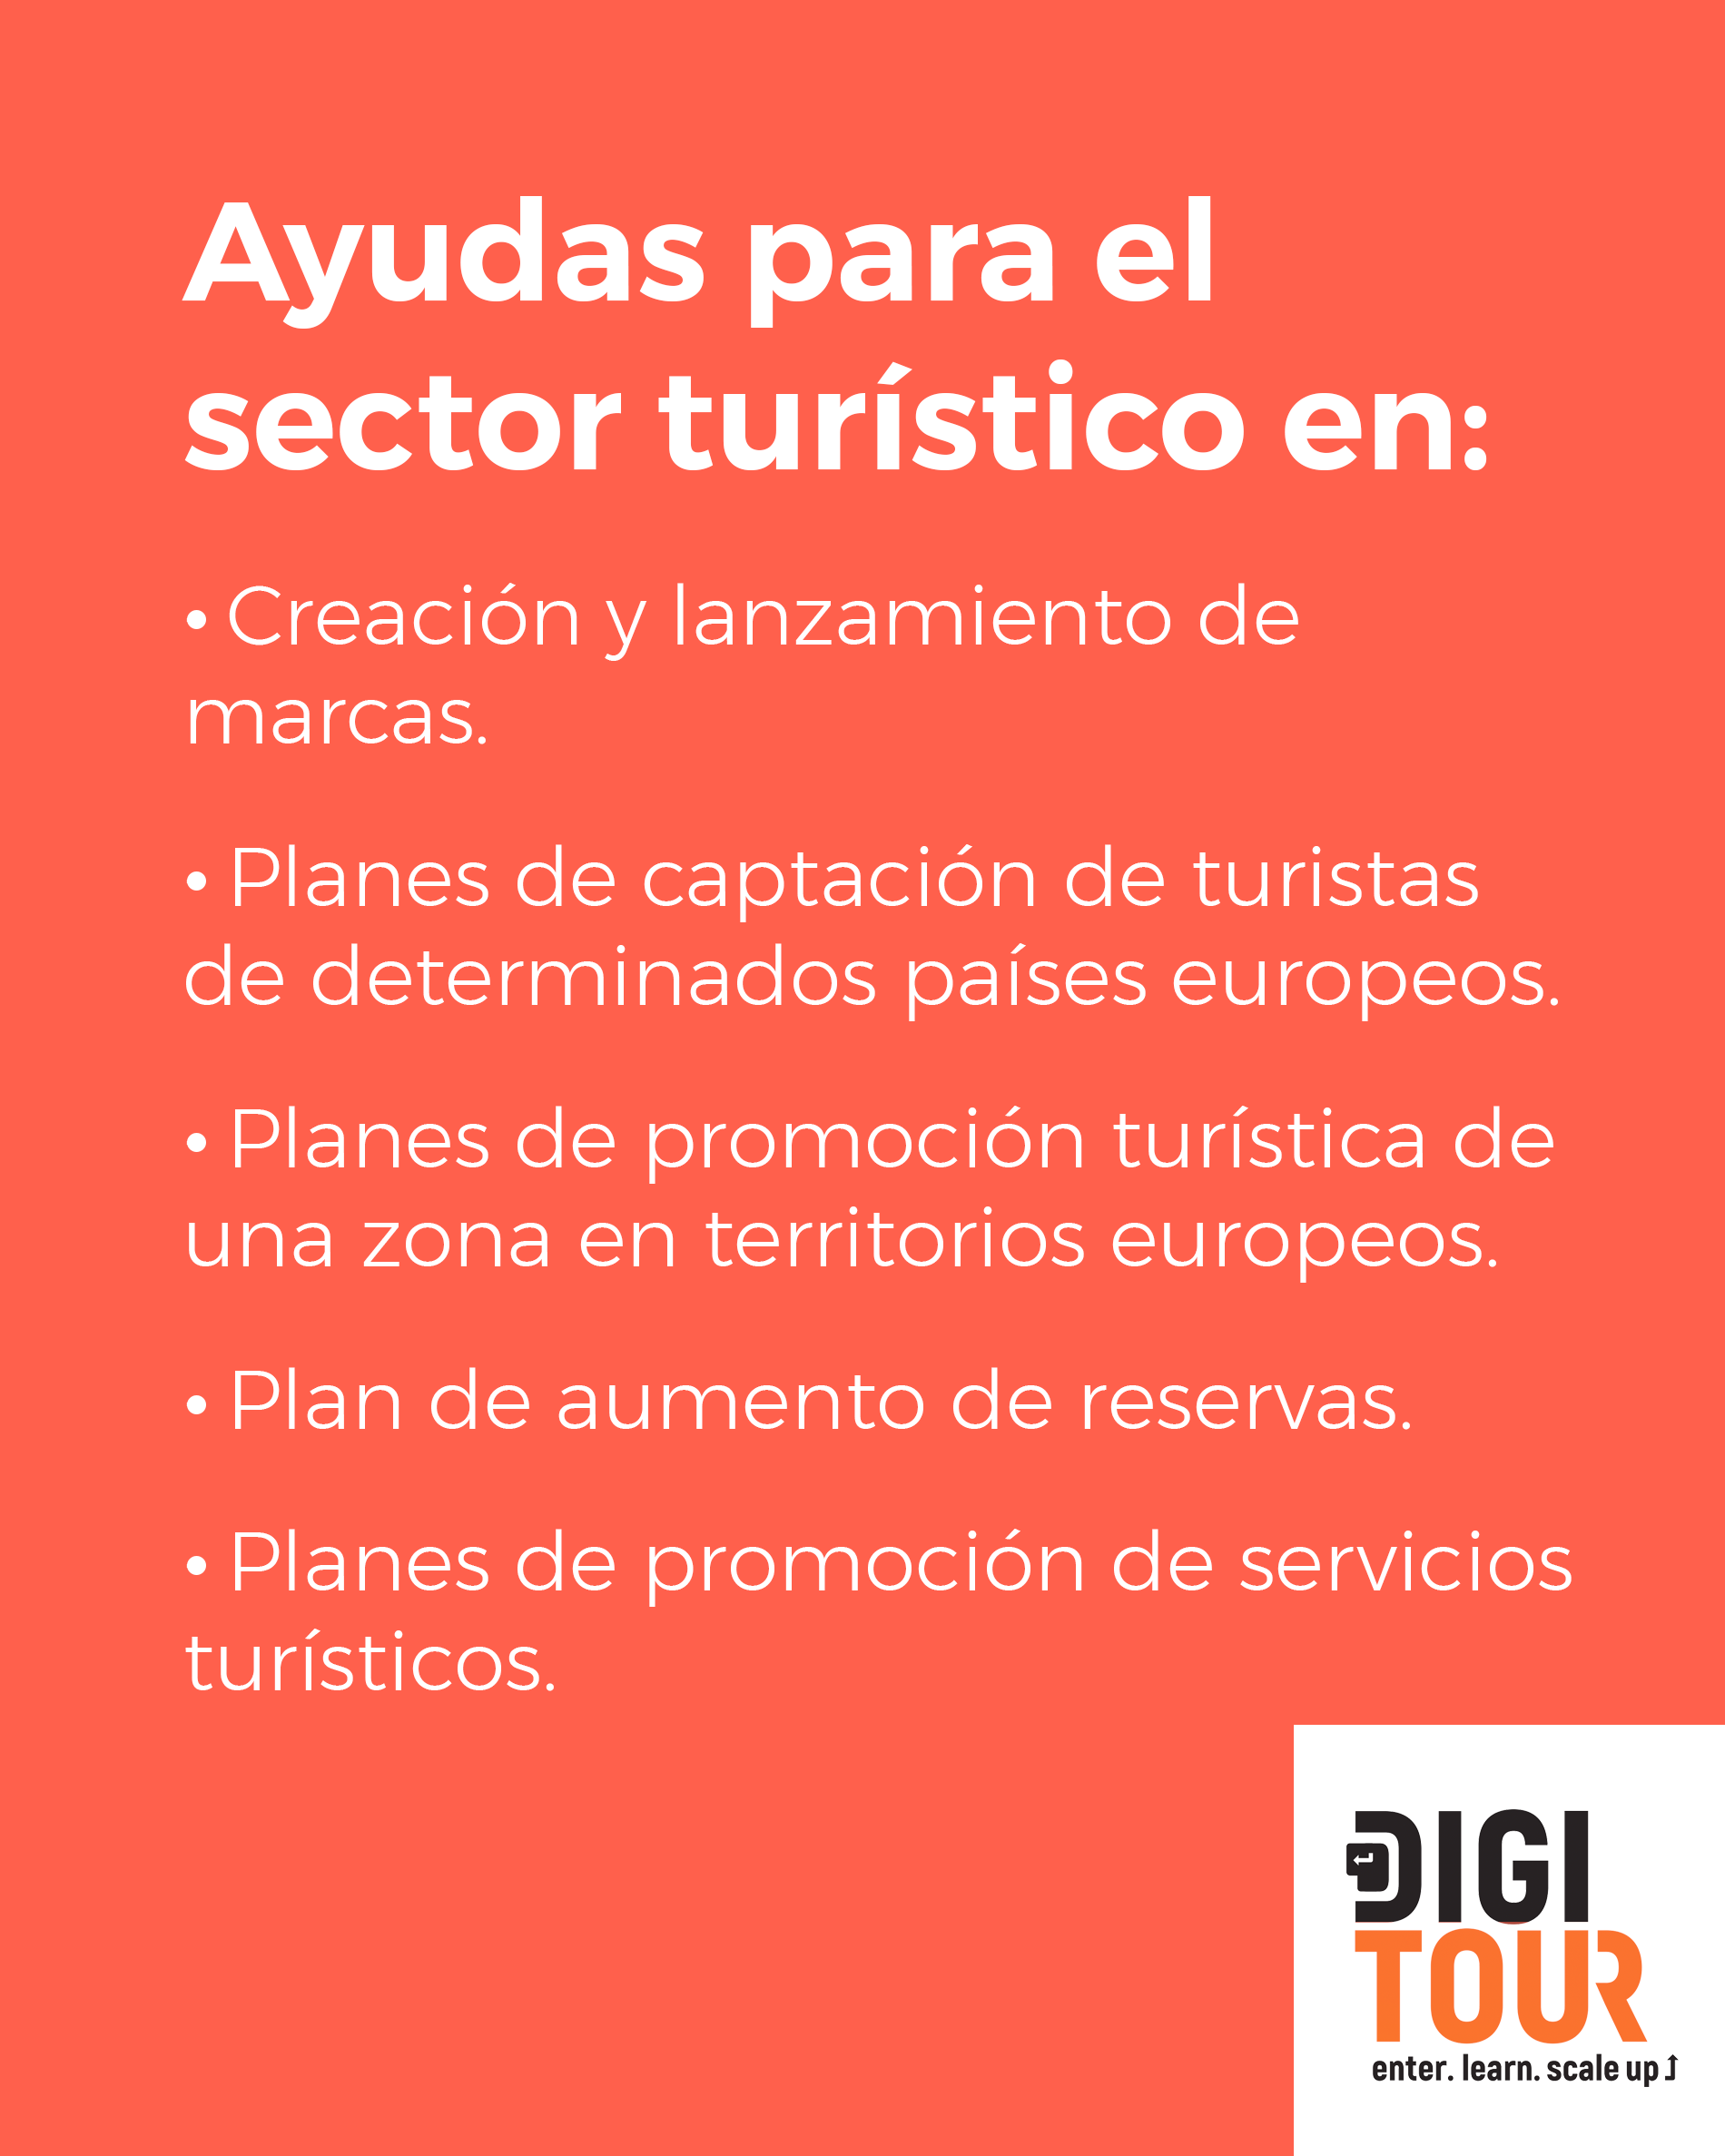 Digitour - Ayudas para el sector turístico